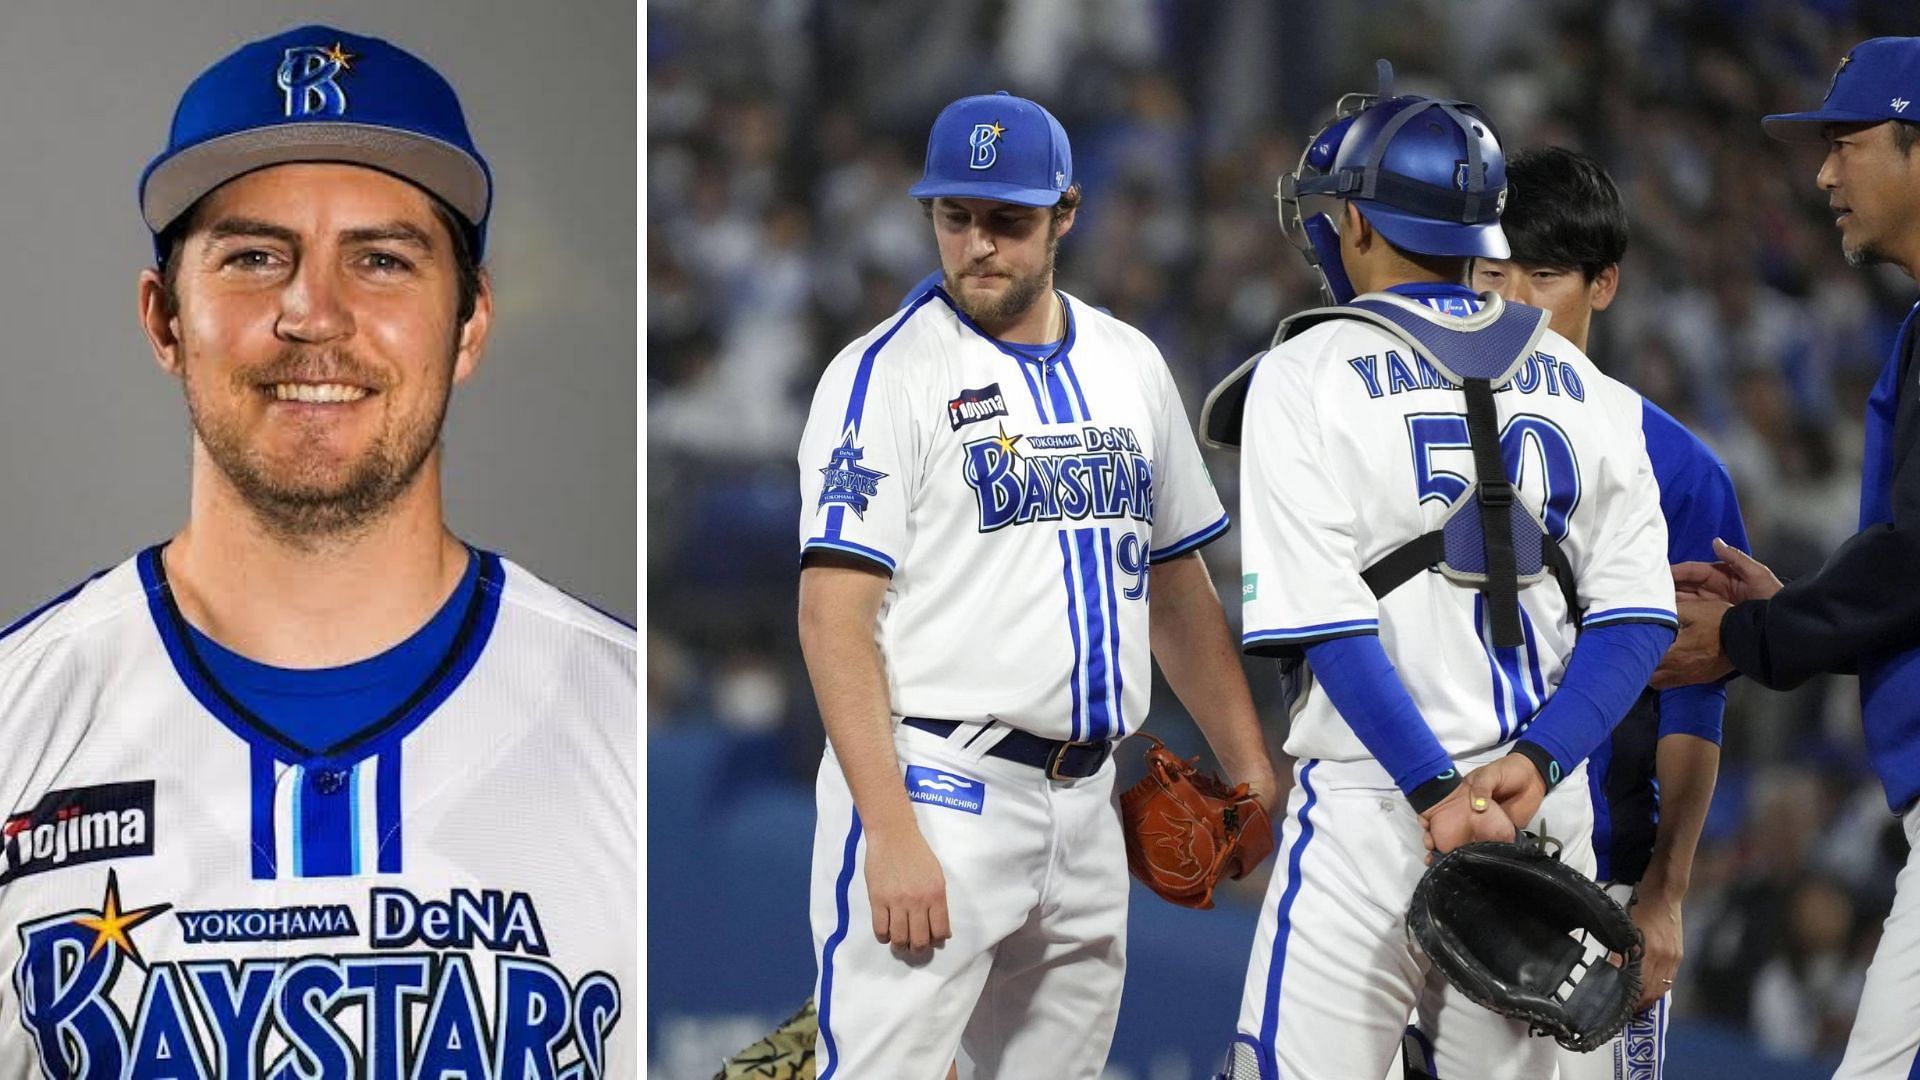 Trevor Bauer joins Japanese baseball team after Dodgers release